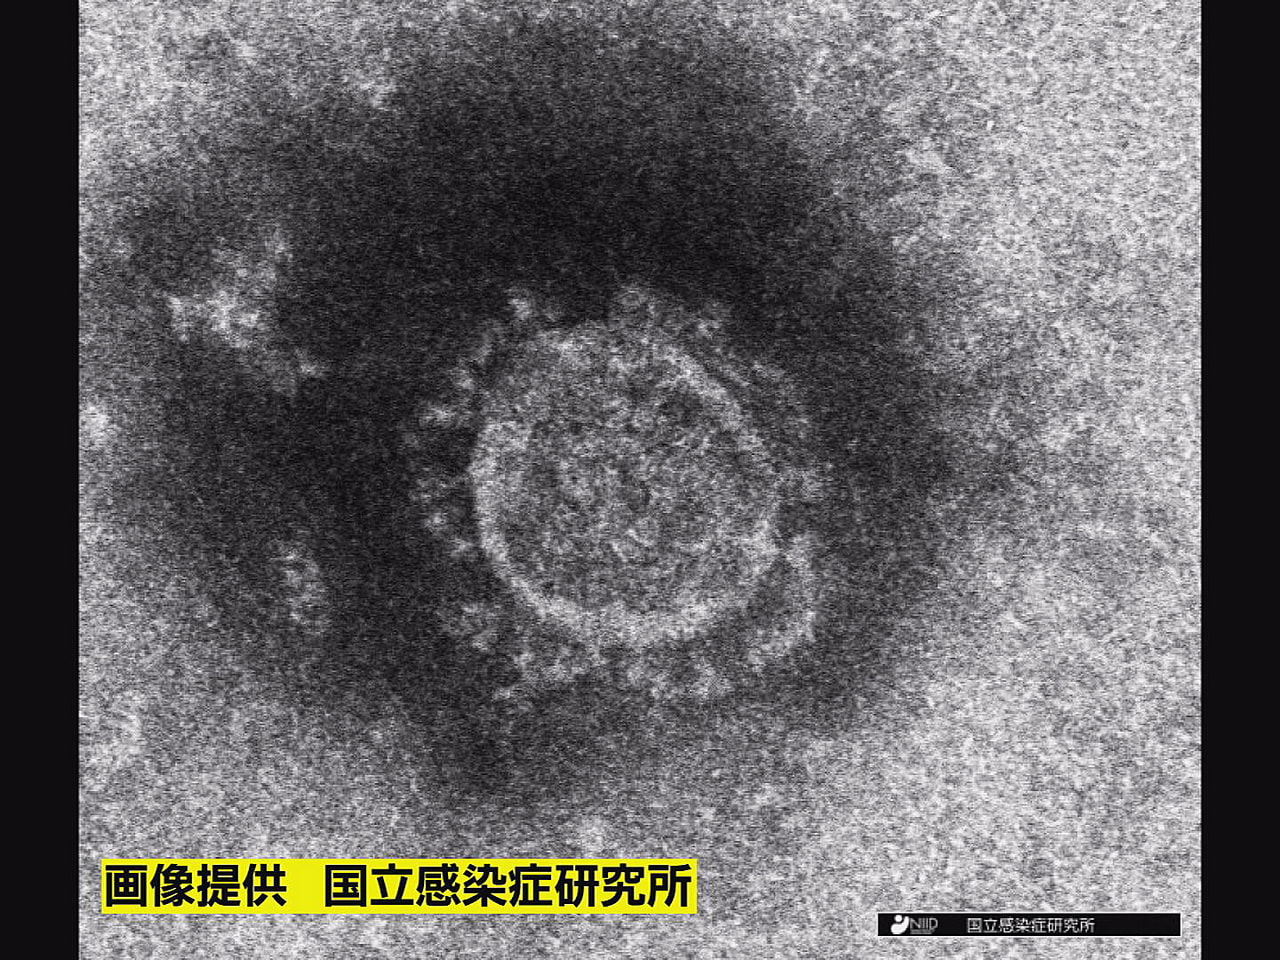 岐阜県と岐阜市は２３日、新たに５０３人の新型コロナウイルス感染を確認したと発表し...